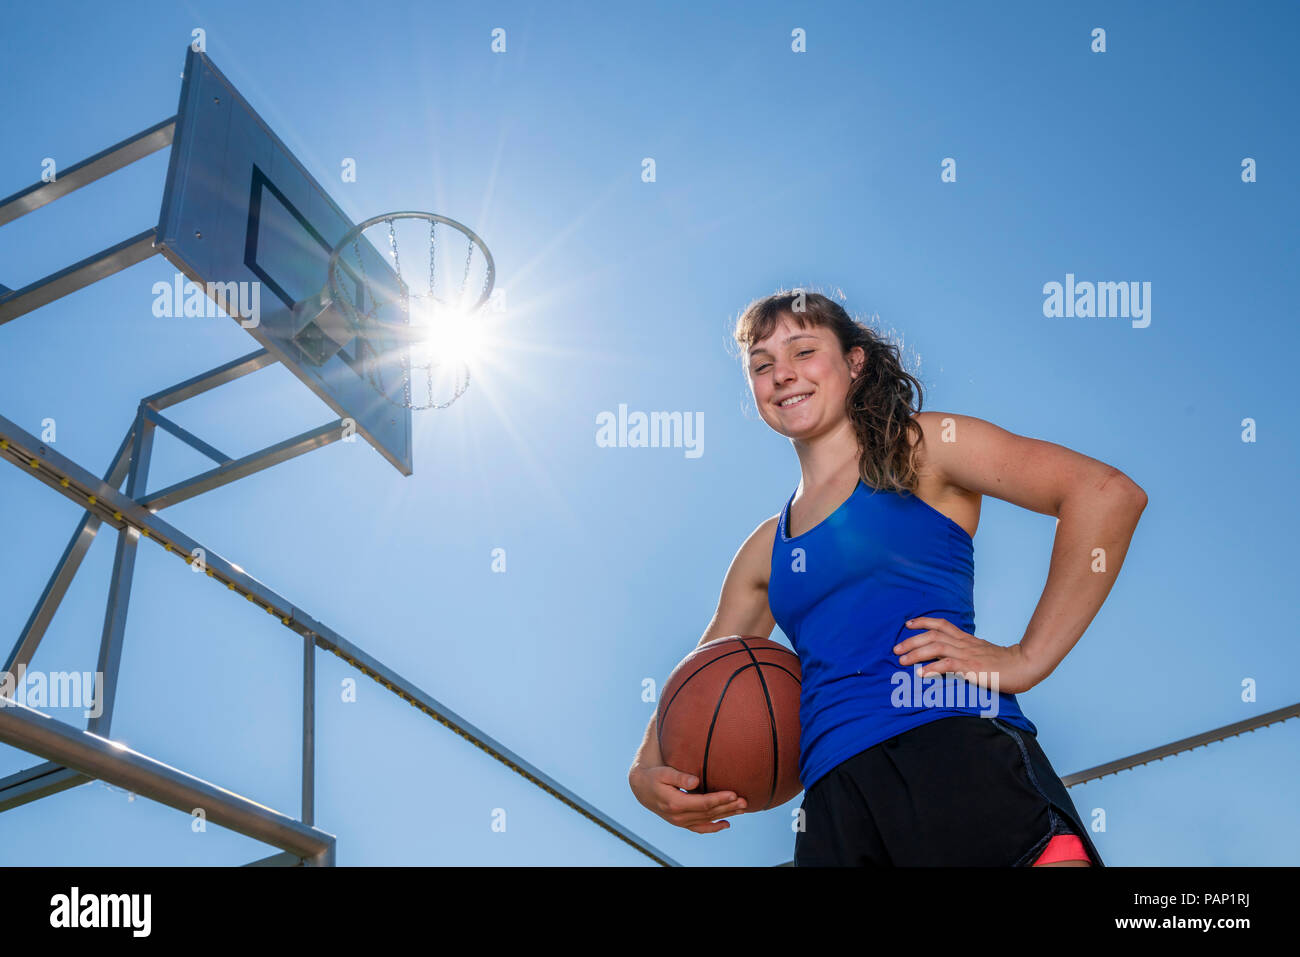 Jeune femme avec le basket-ball contre le soleil Banque D'Images